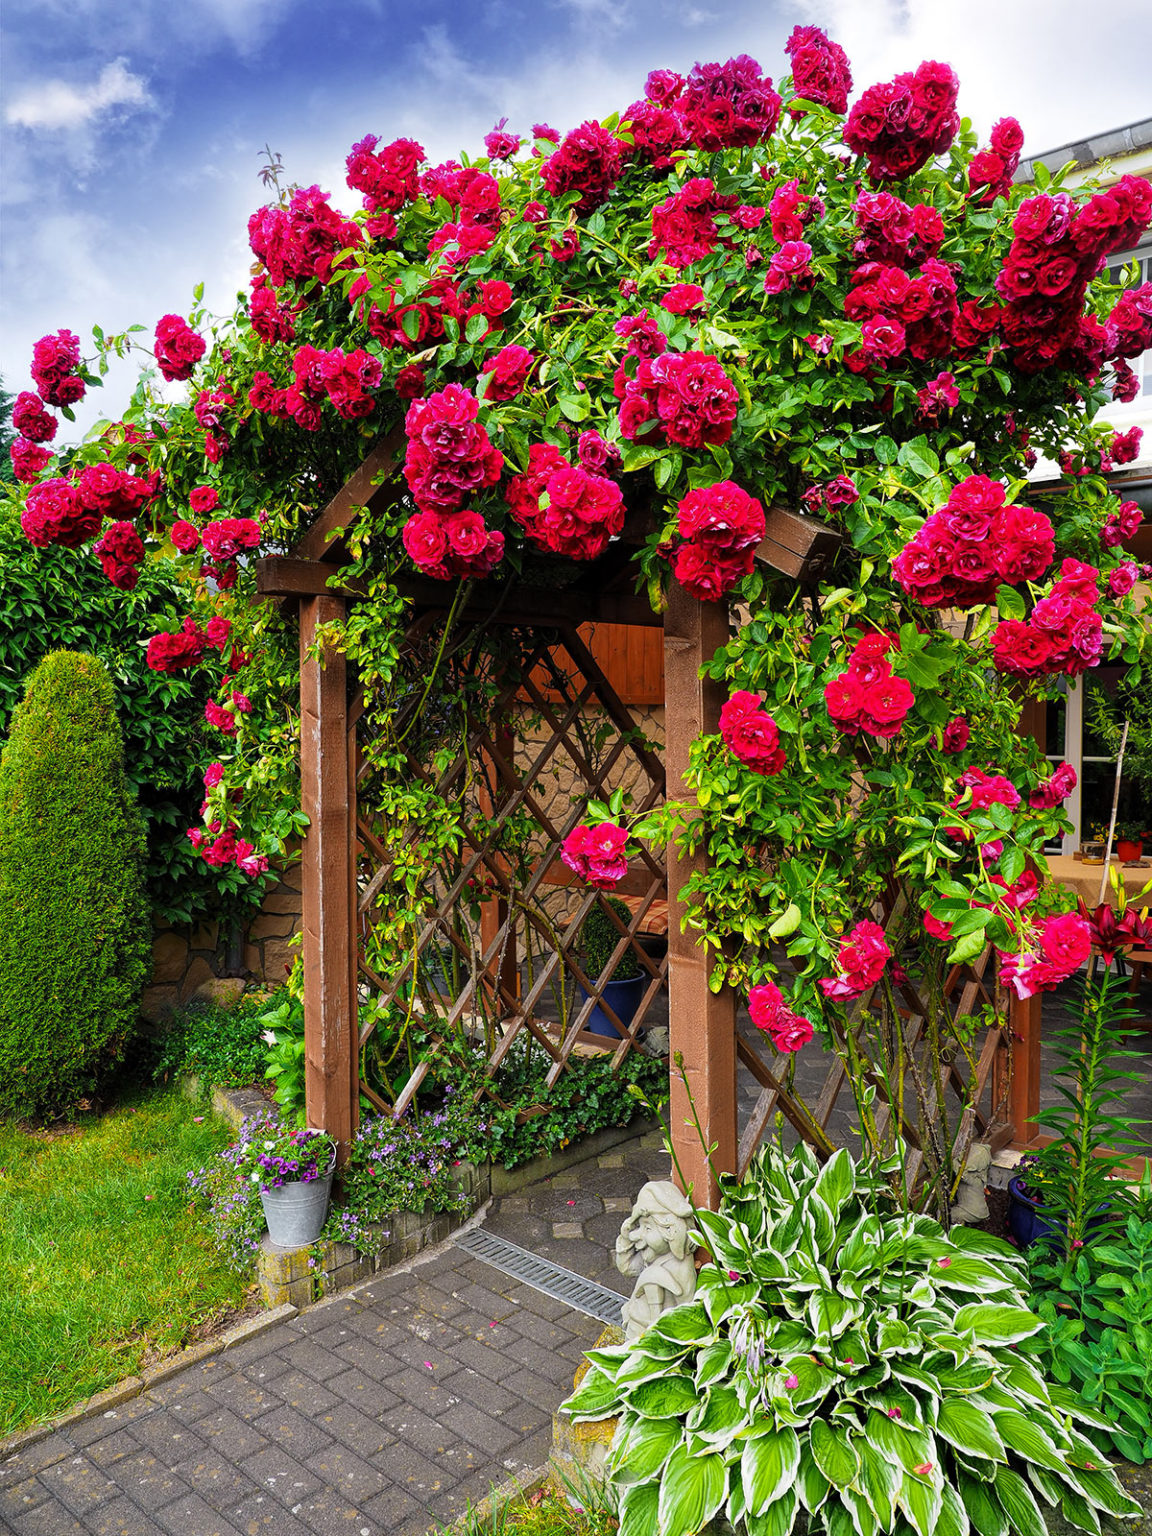 Les roses dans le jardin: quand la magie devient réalité... 13 inspirations